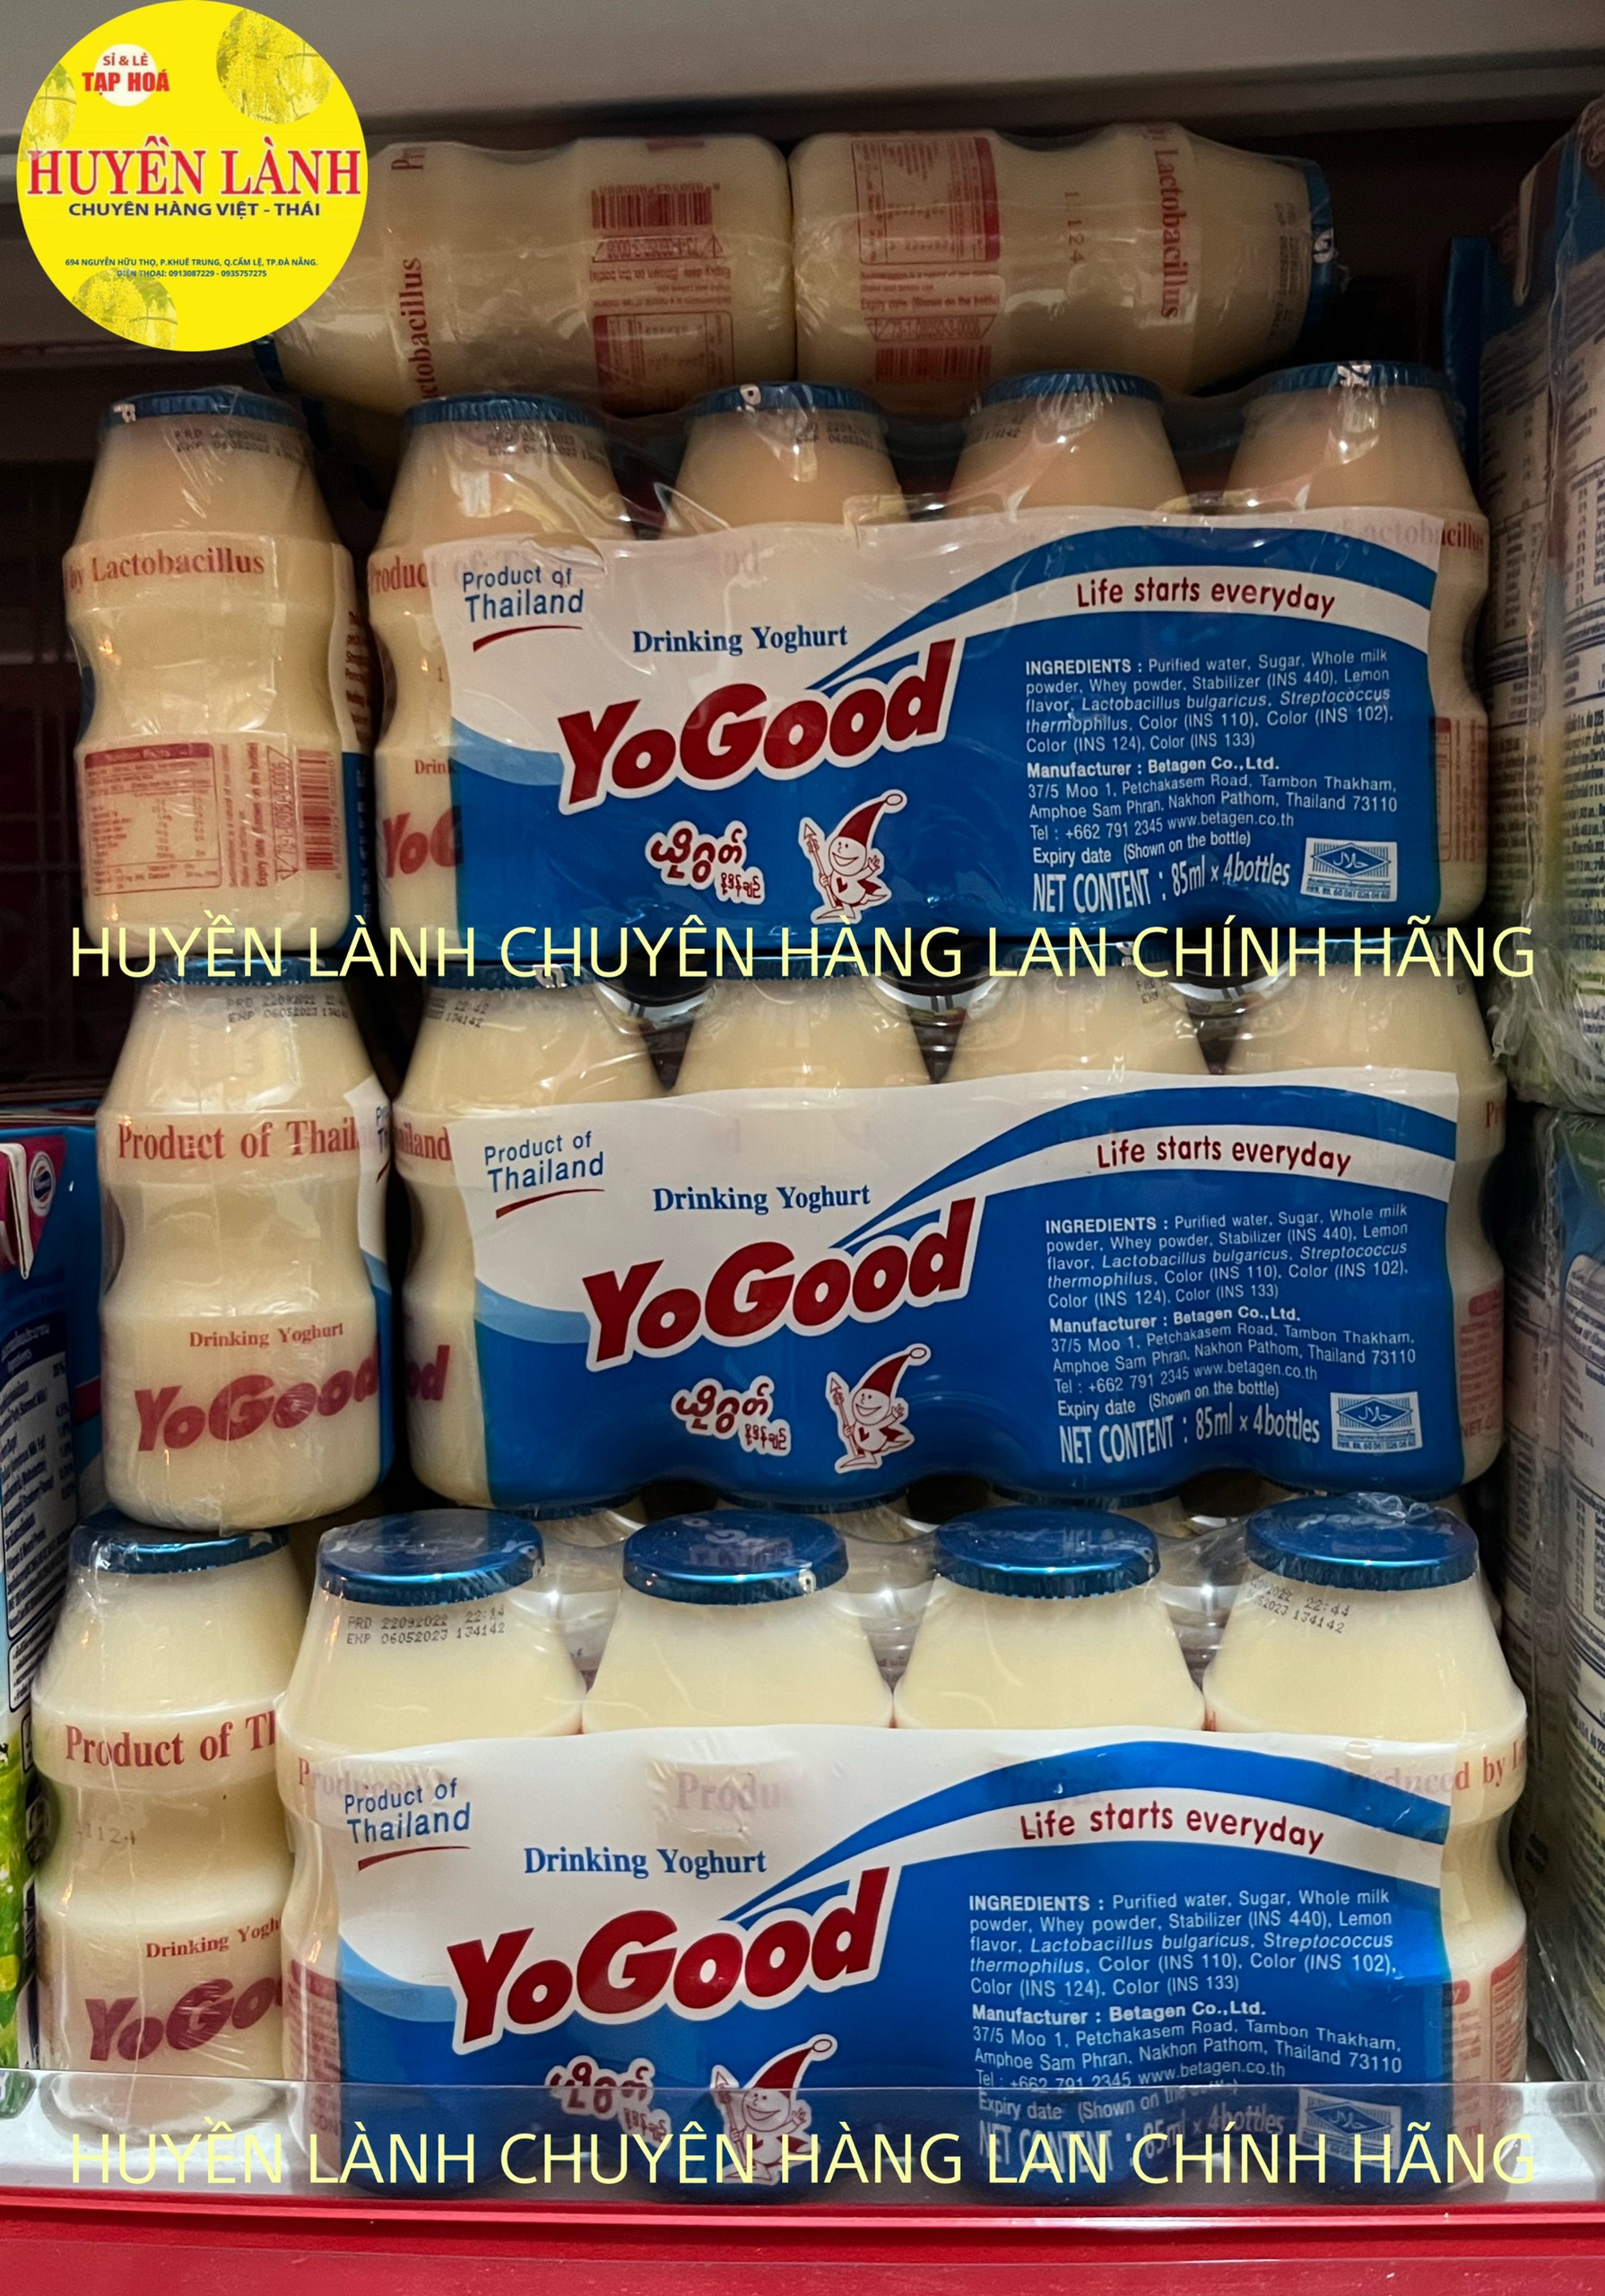 Sữa Chua Uống Lên Men Thái Lan Sữa chua uống Yogood Thái Lan - Có đủ 3 Vị